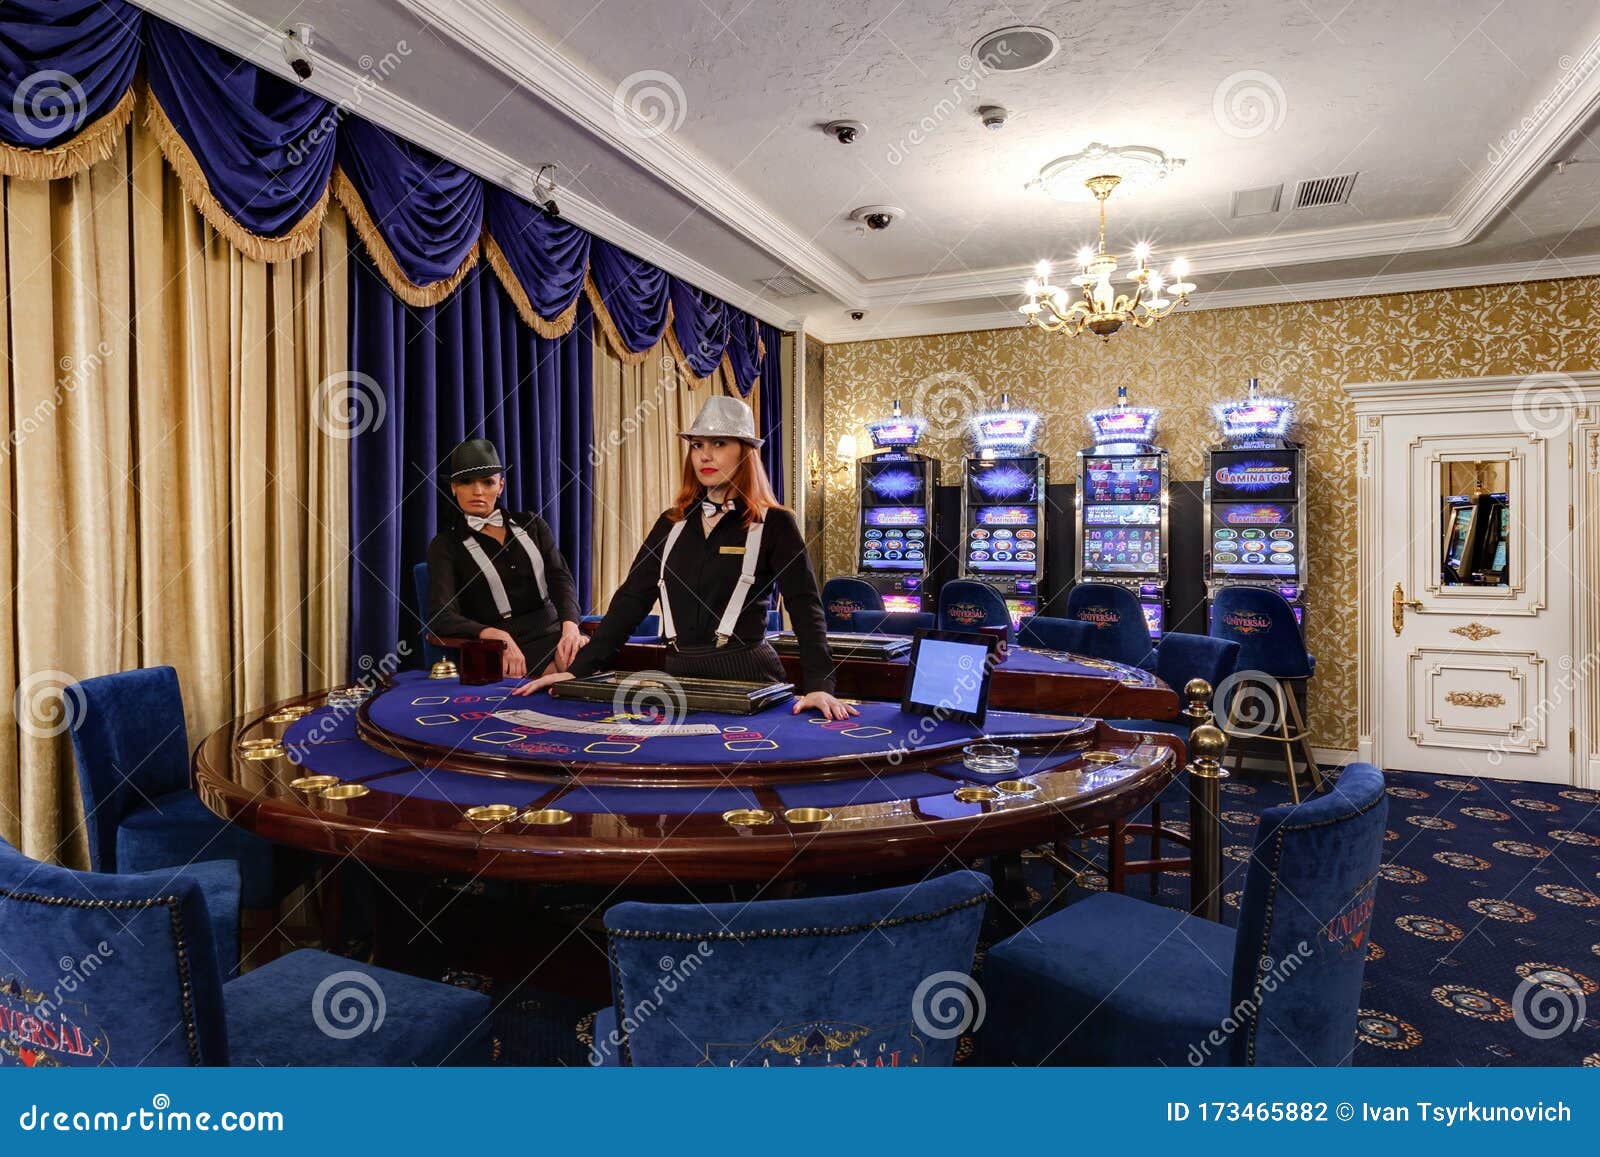 Юниверсал казино минск казино задонского района